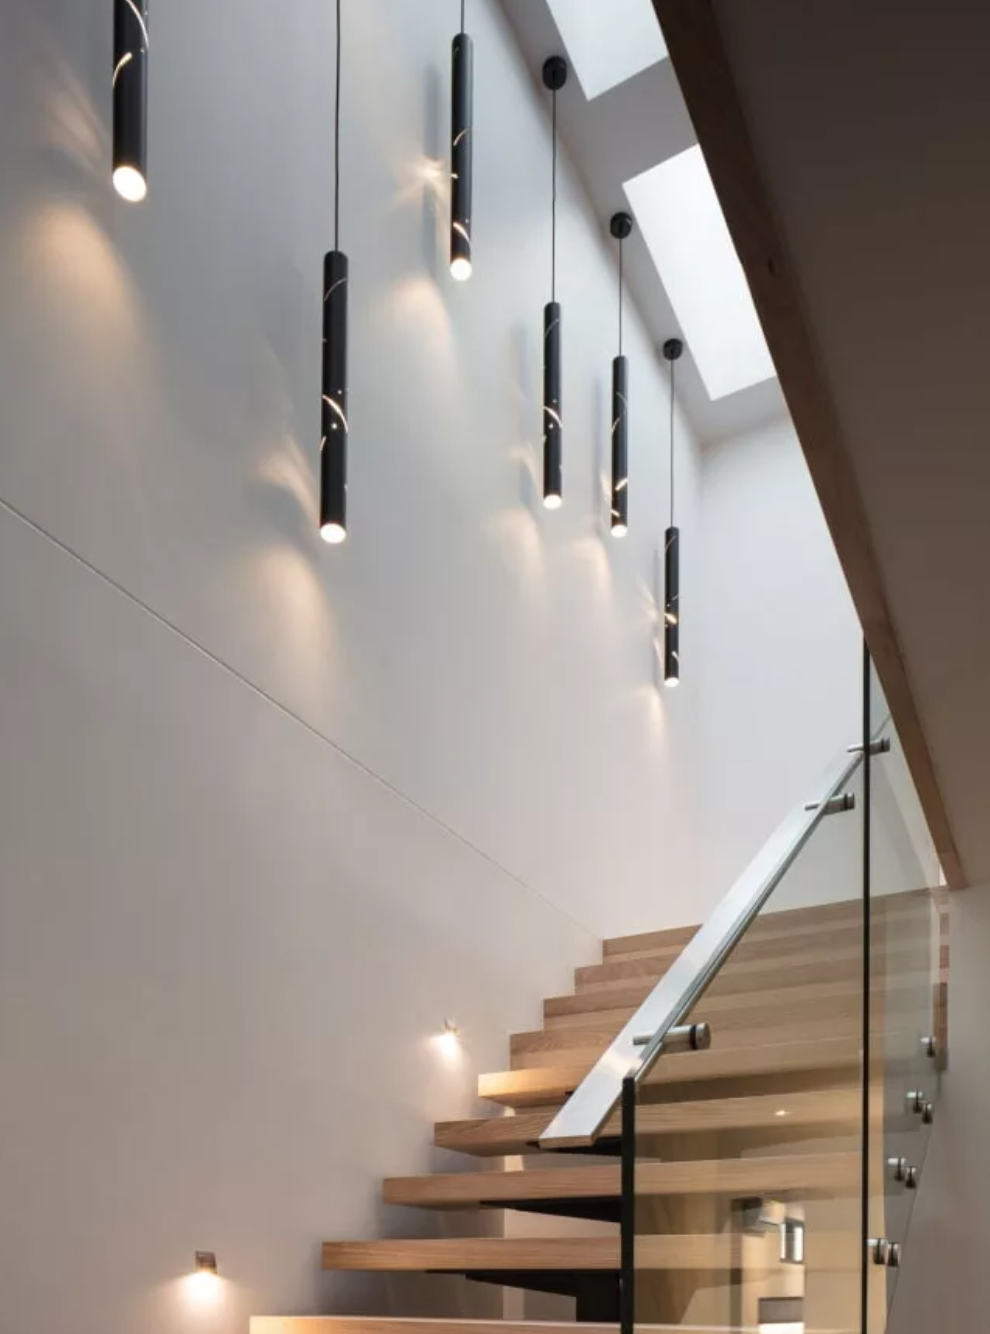 Идею освещения зоны лестницы мы нашли в интернете: вместо встроенных точечных светильников повесили вдоль стены плафоны контрастного цвета. Получилось не как на картинке, но мне нравится. Источник: ledsshop.ru